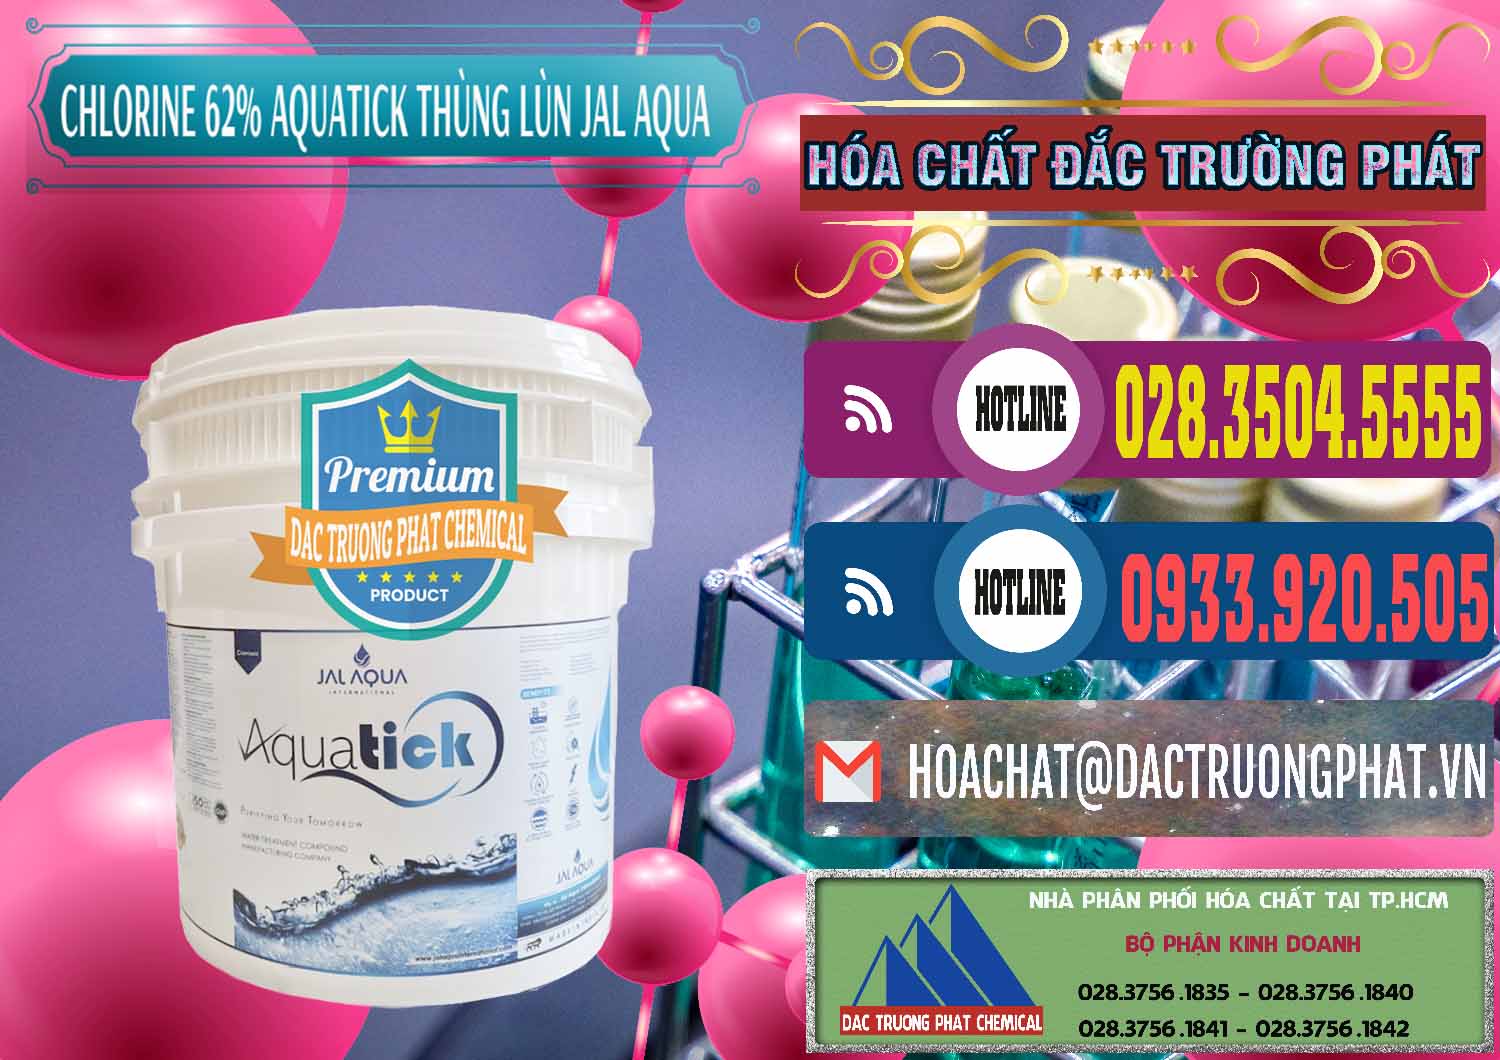 Công ty chuyên bán _ phân phối Chlorine – Clorin 62% Aquatick Thùng Lùn Jal Aqua Ấn Độ India - 0238 - Đơn vị nhập khẩu và phân phối hóa chất tại TP.HCM - muabanhoachat.com.vn